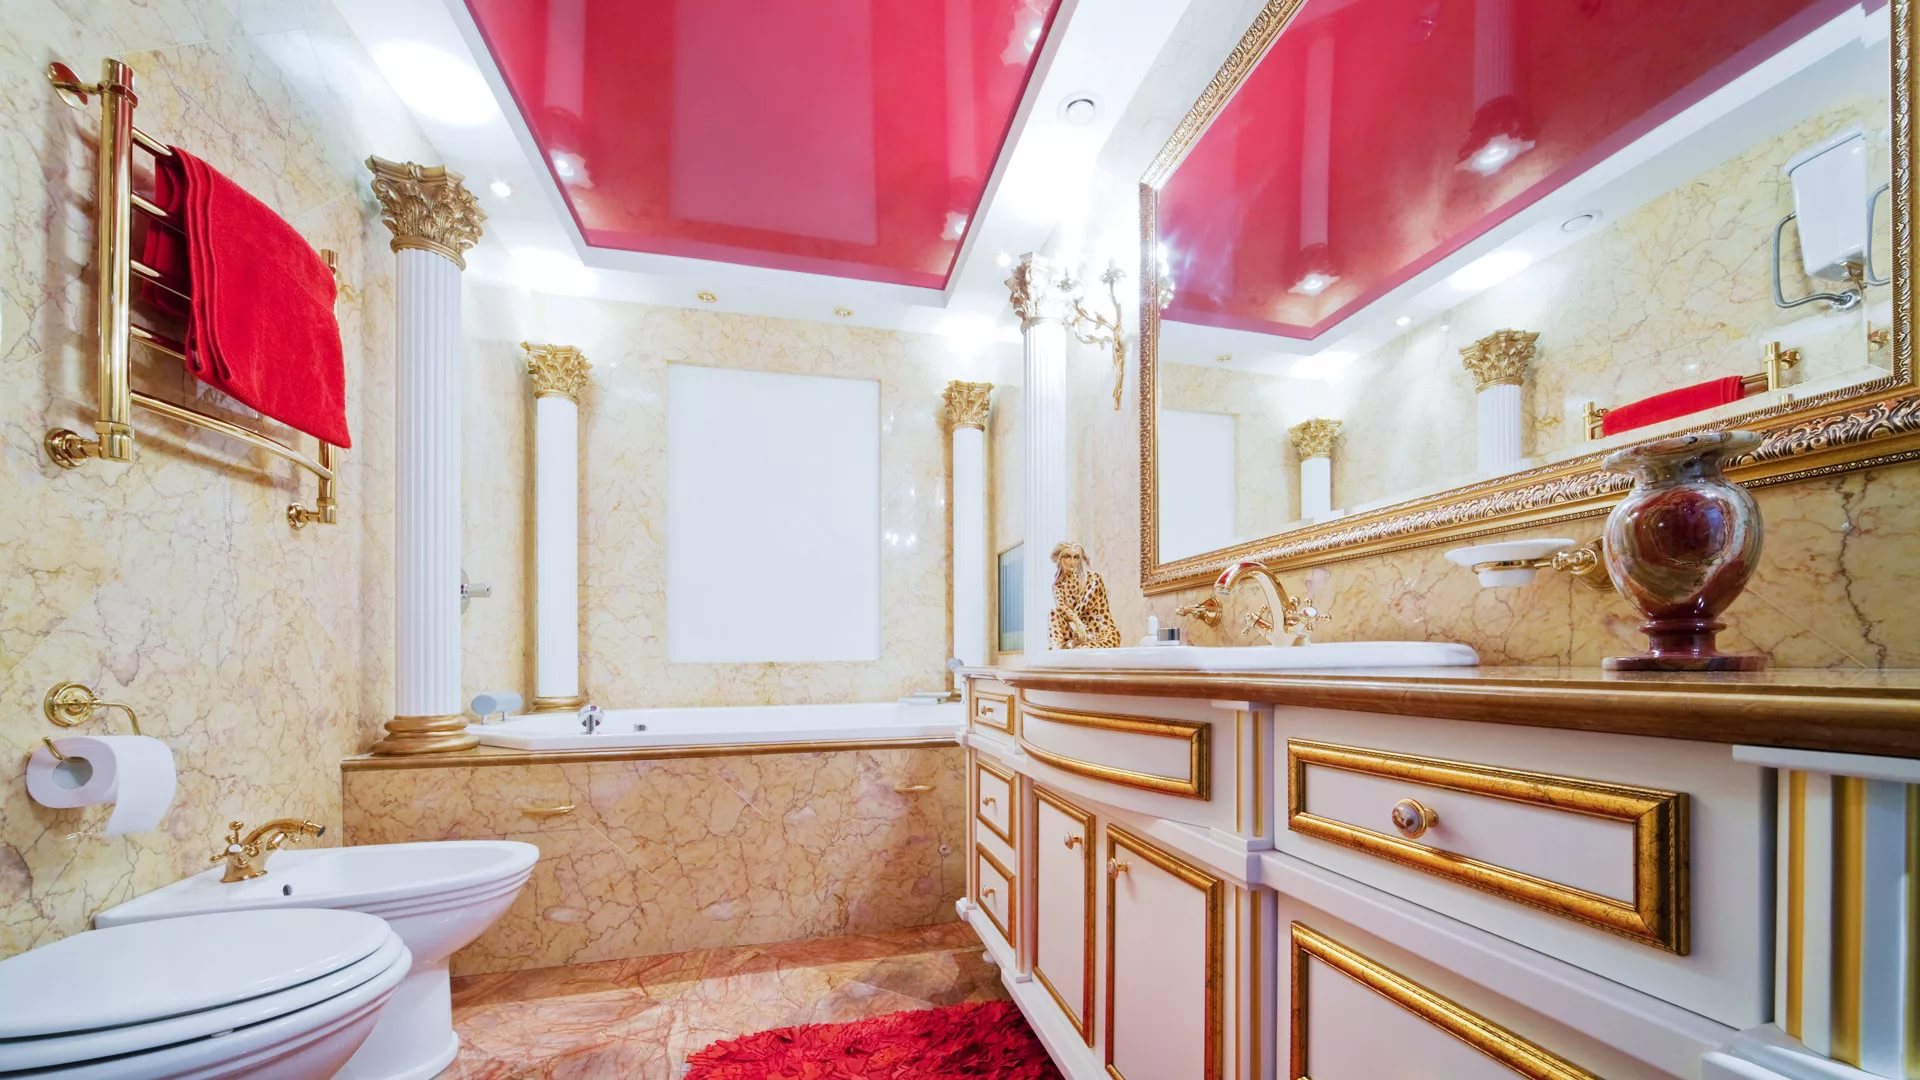 Натяжной потолок в ванной: плюсы и минусы эксплуатации конструкции